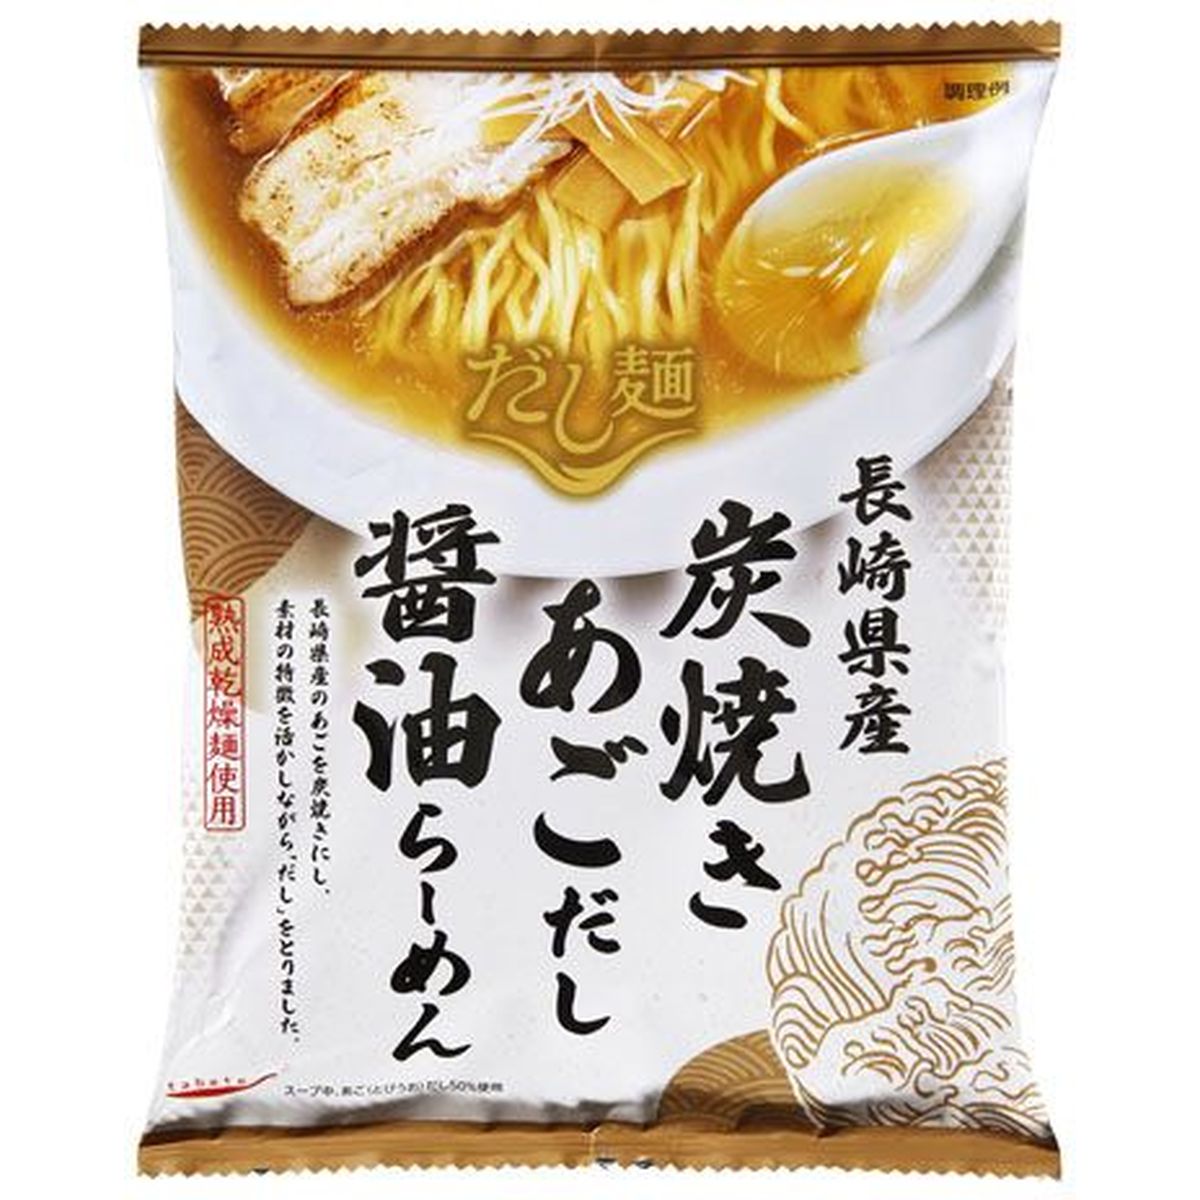 【10個入リ】新ダシ麺長崎県炭焼キアゴダシ醤油ラーメン 108g